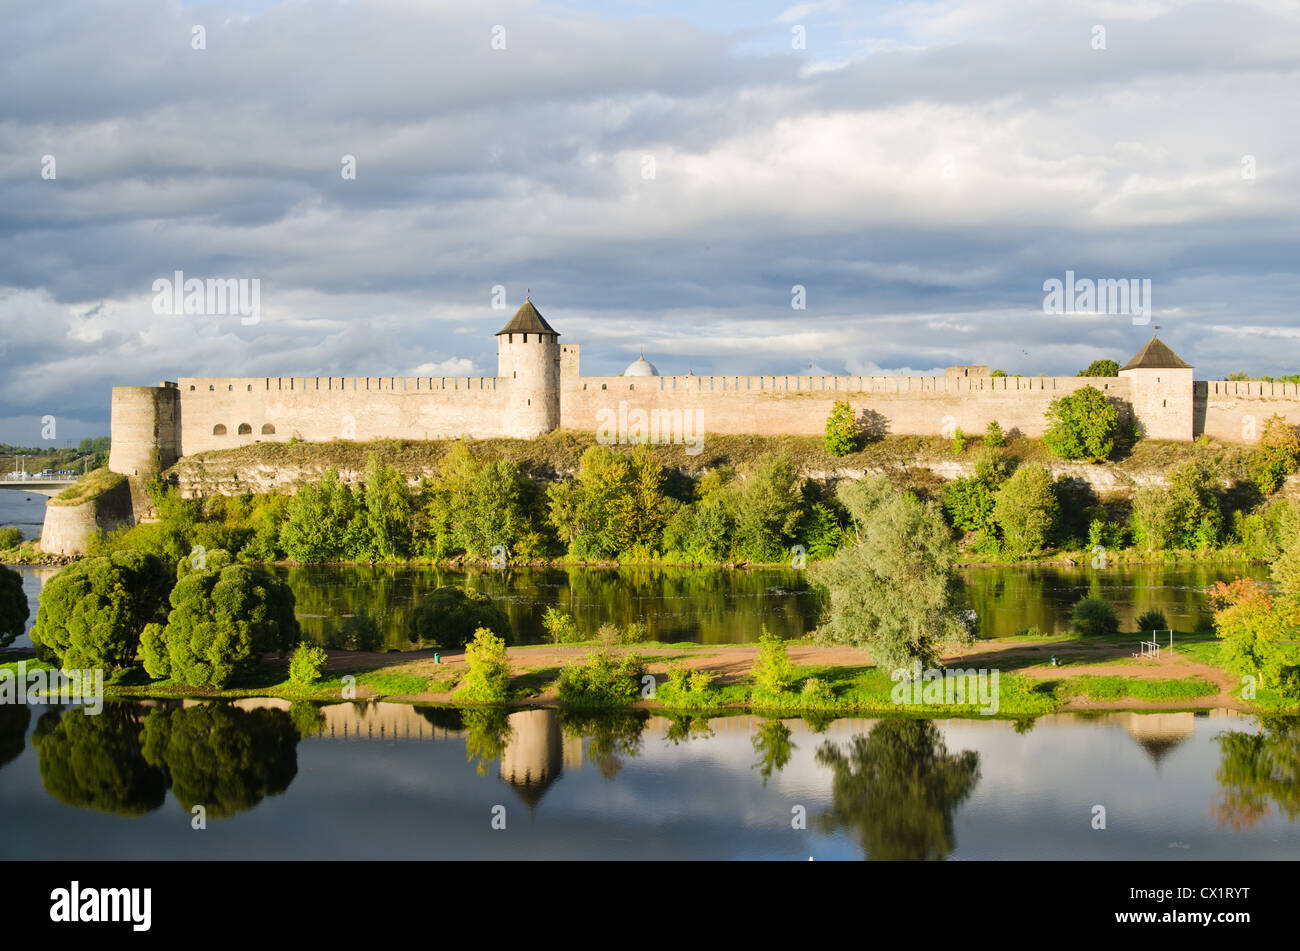 Festung in Ivangorod, die westliche Grenze von Russland Stockfoto